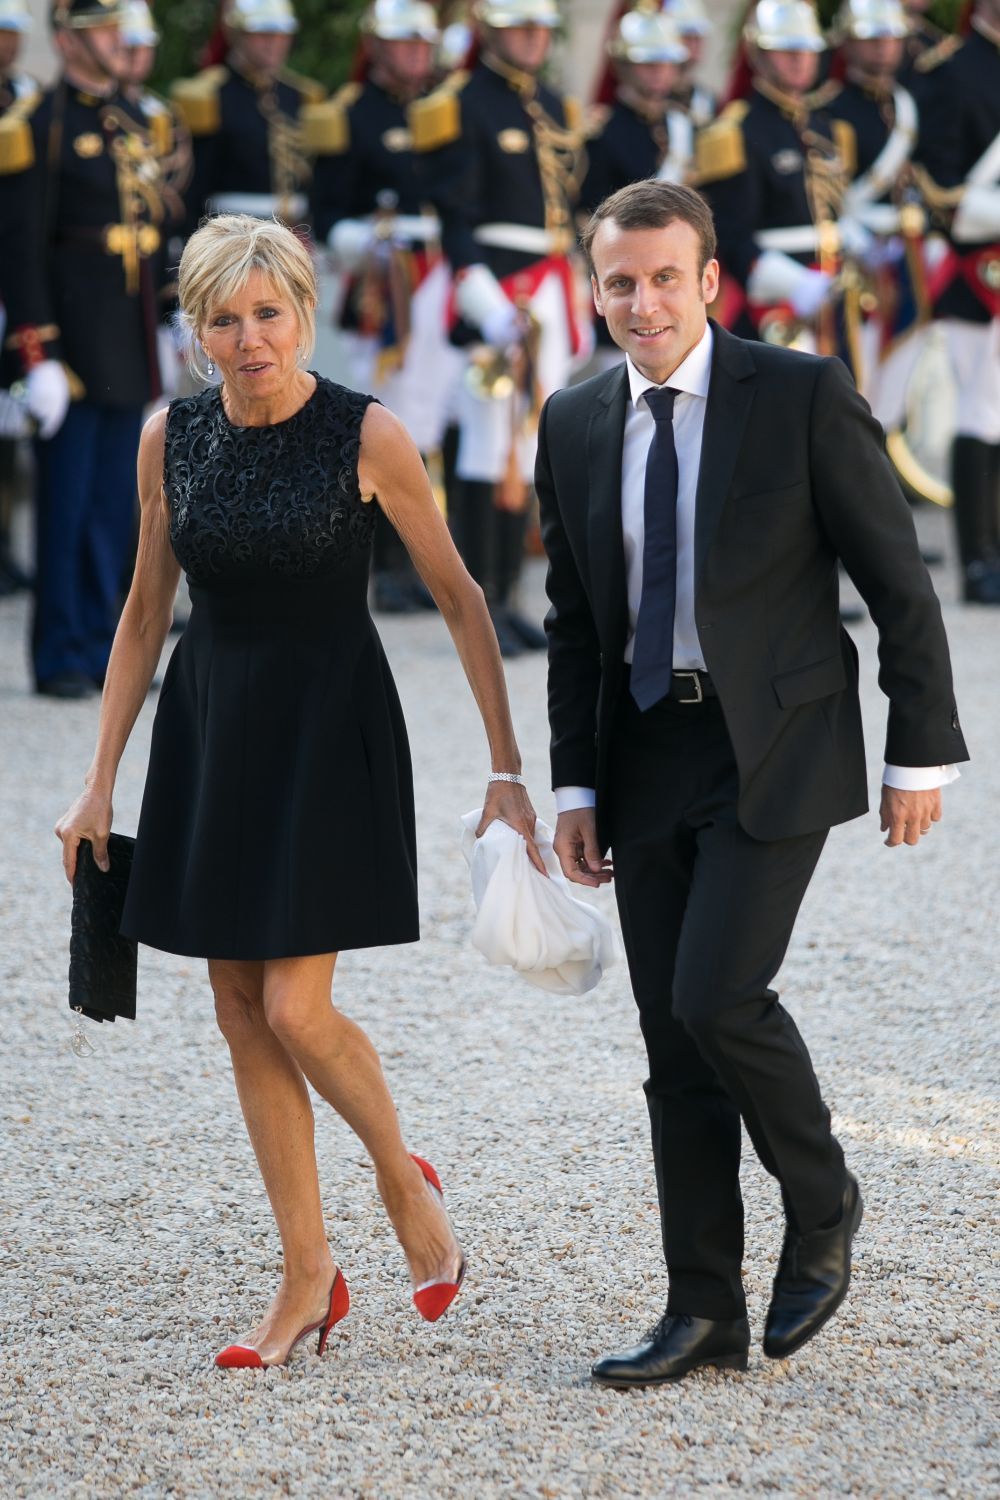 Emmanuel Macron, Presedintele Frantei, si-a cunoscut sotia cand ii era profesoara. Cine e Brigitte Trogneux